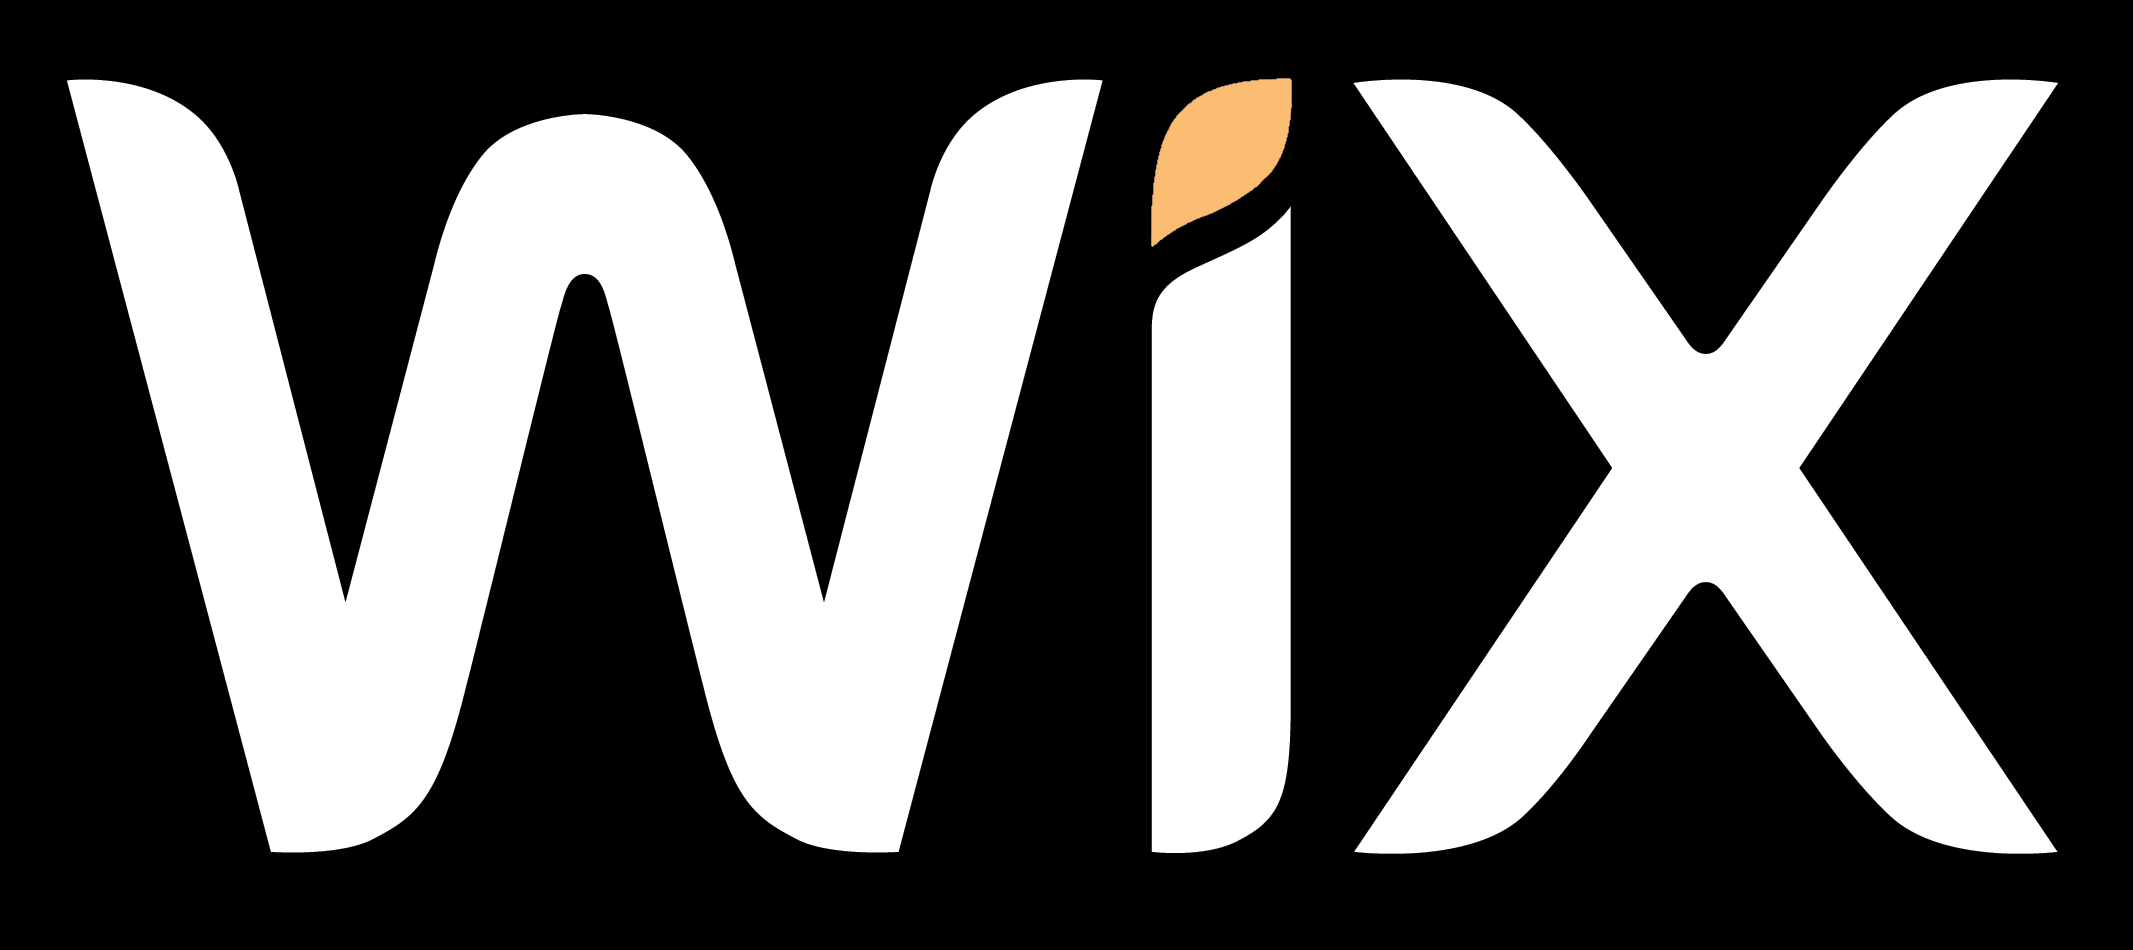 Wix Logo - Wix.com logo, black